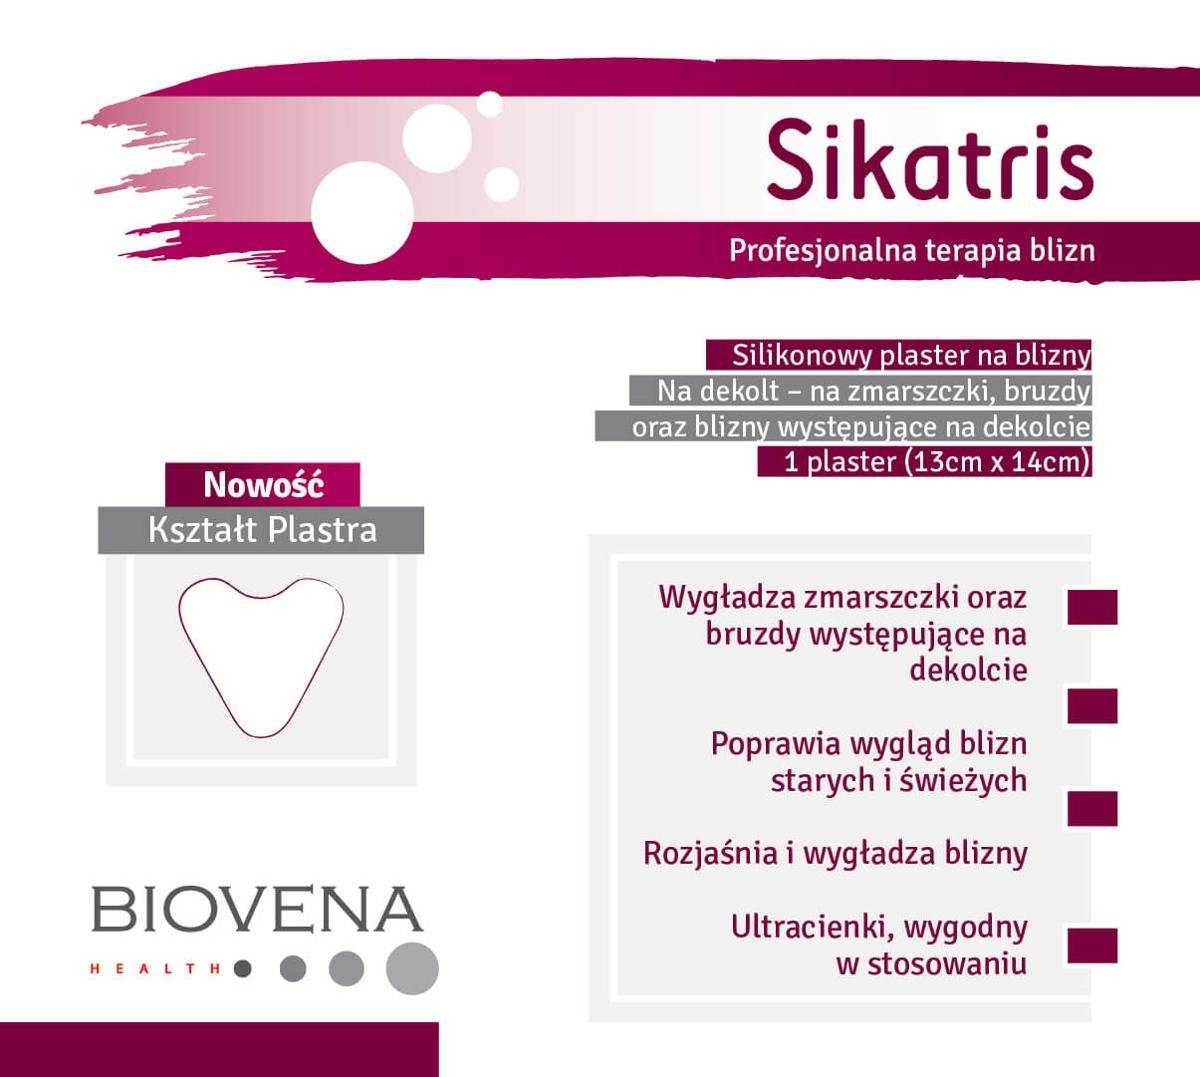 Biovena Health Sikatris Silikonowy plaster na zmarszczki, bruzdy i blizny na dekolcie 13cmx14cm 507